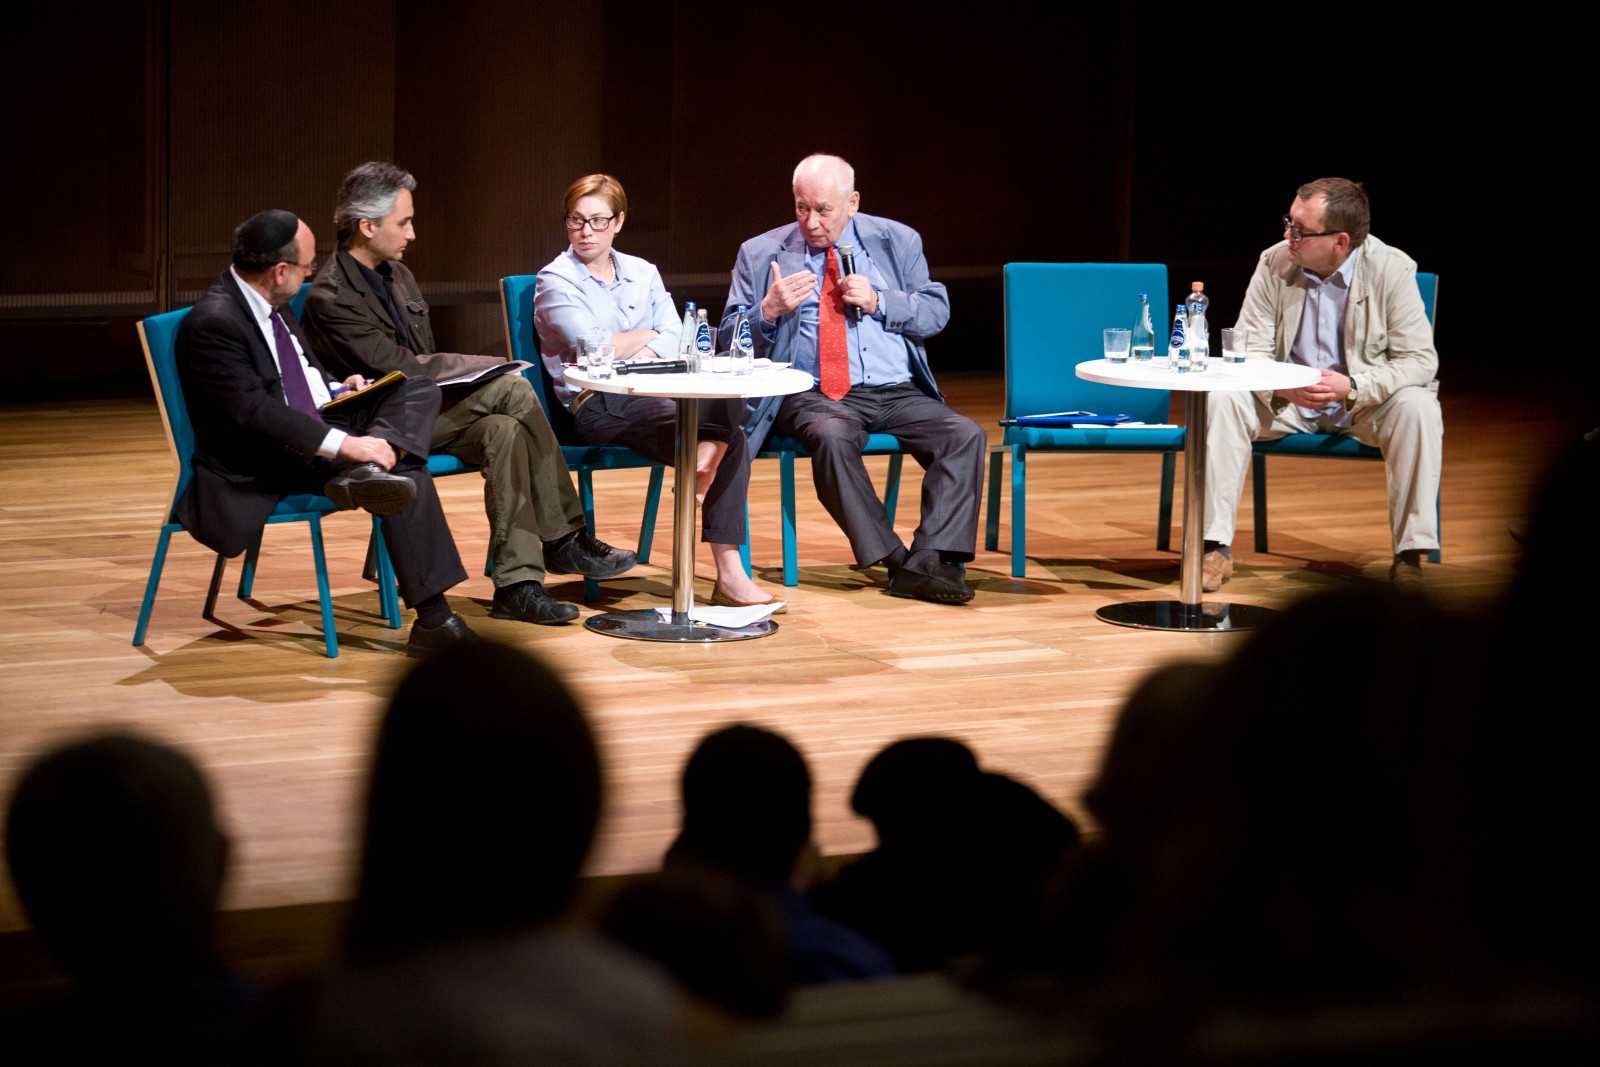 Kilku panelistów siedzi na scenie podczas debaty o uboju rytualnym.